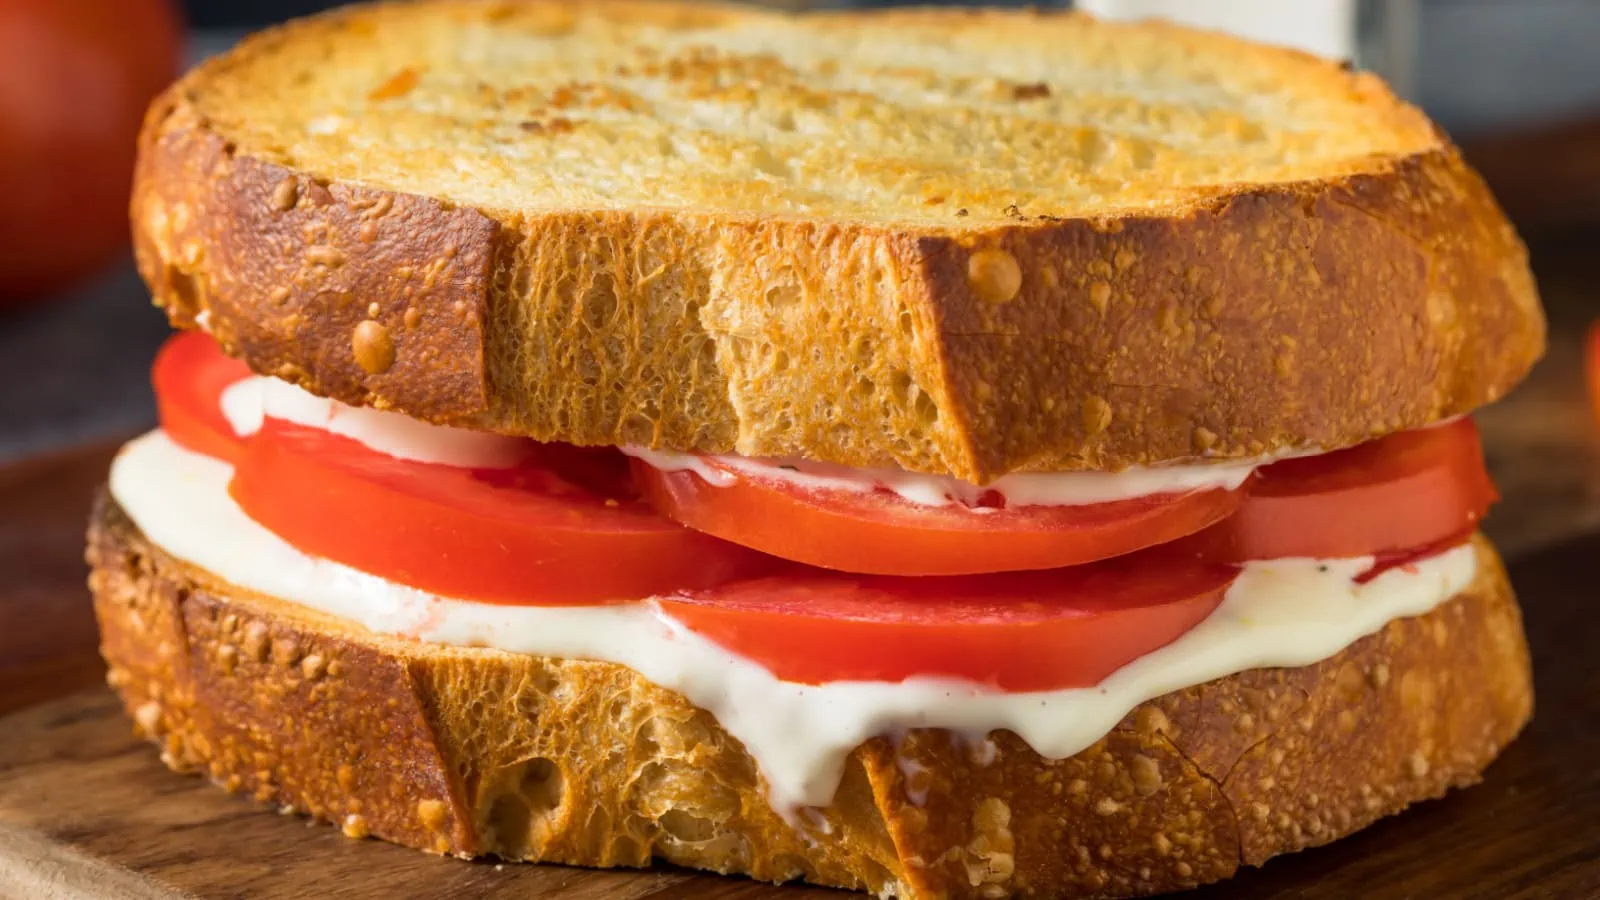 Mayo and tomato sandwich